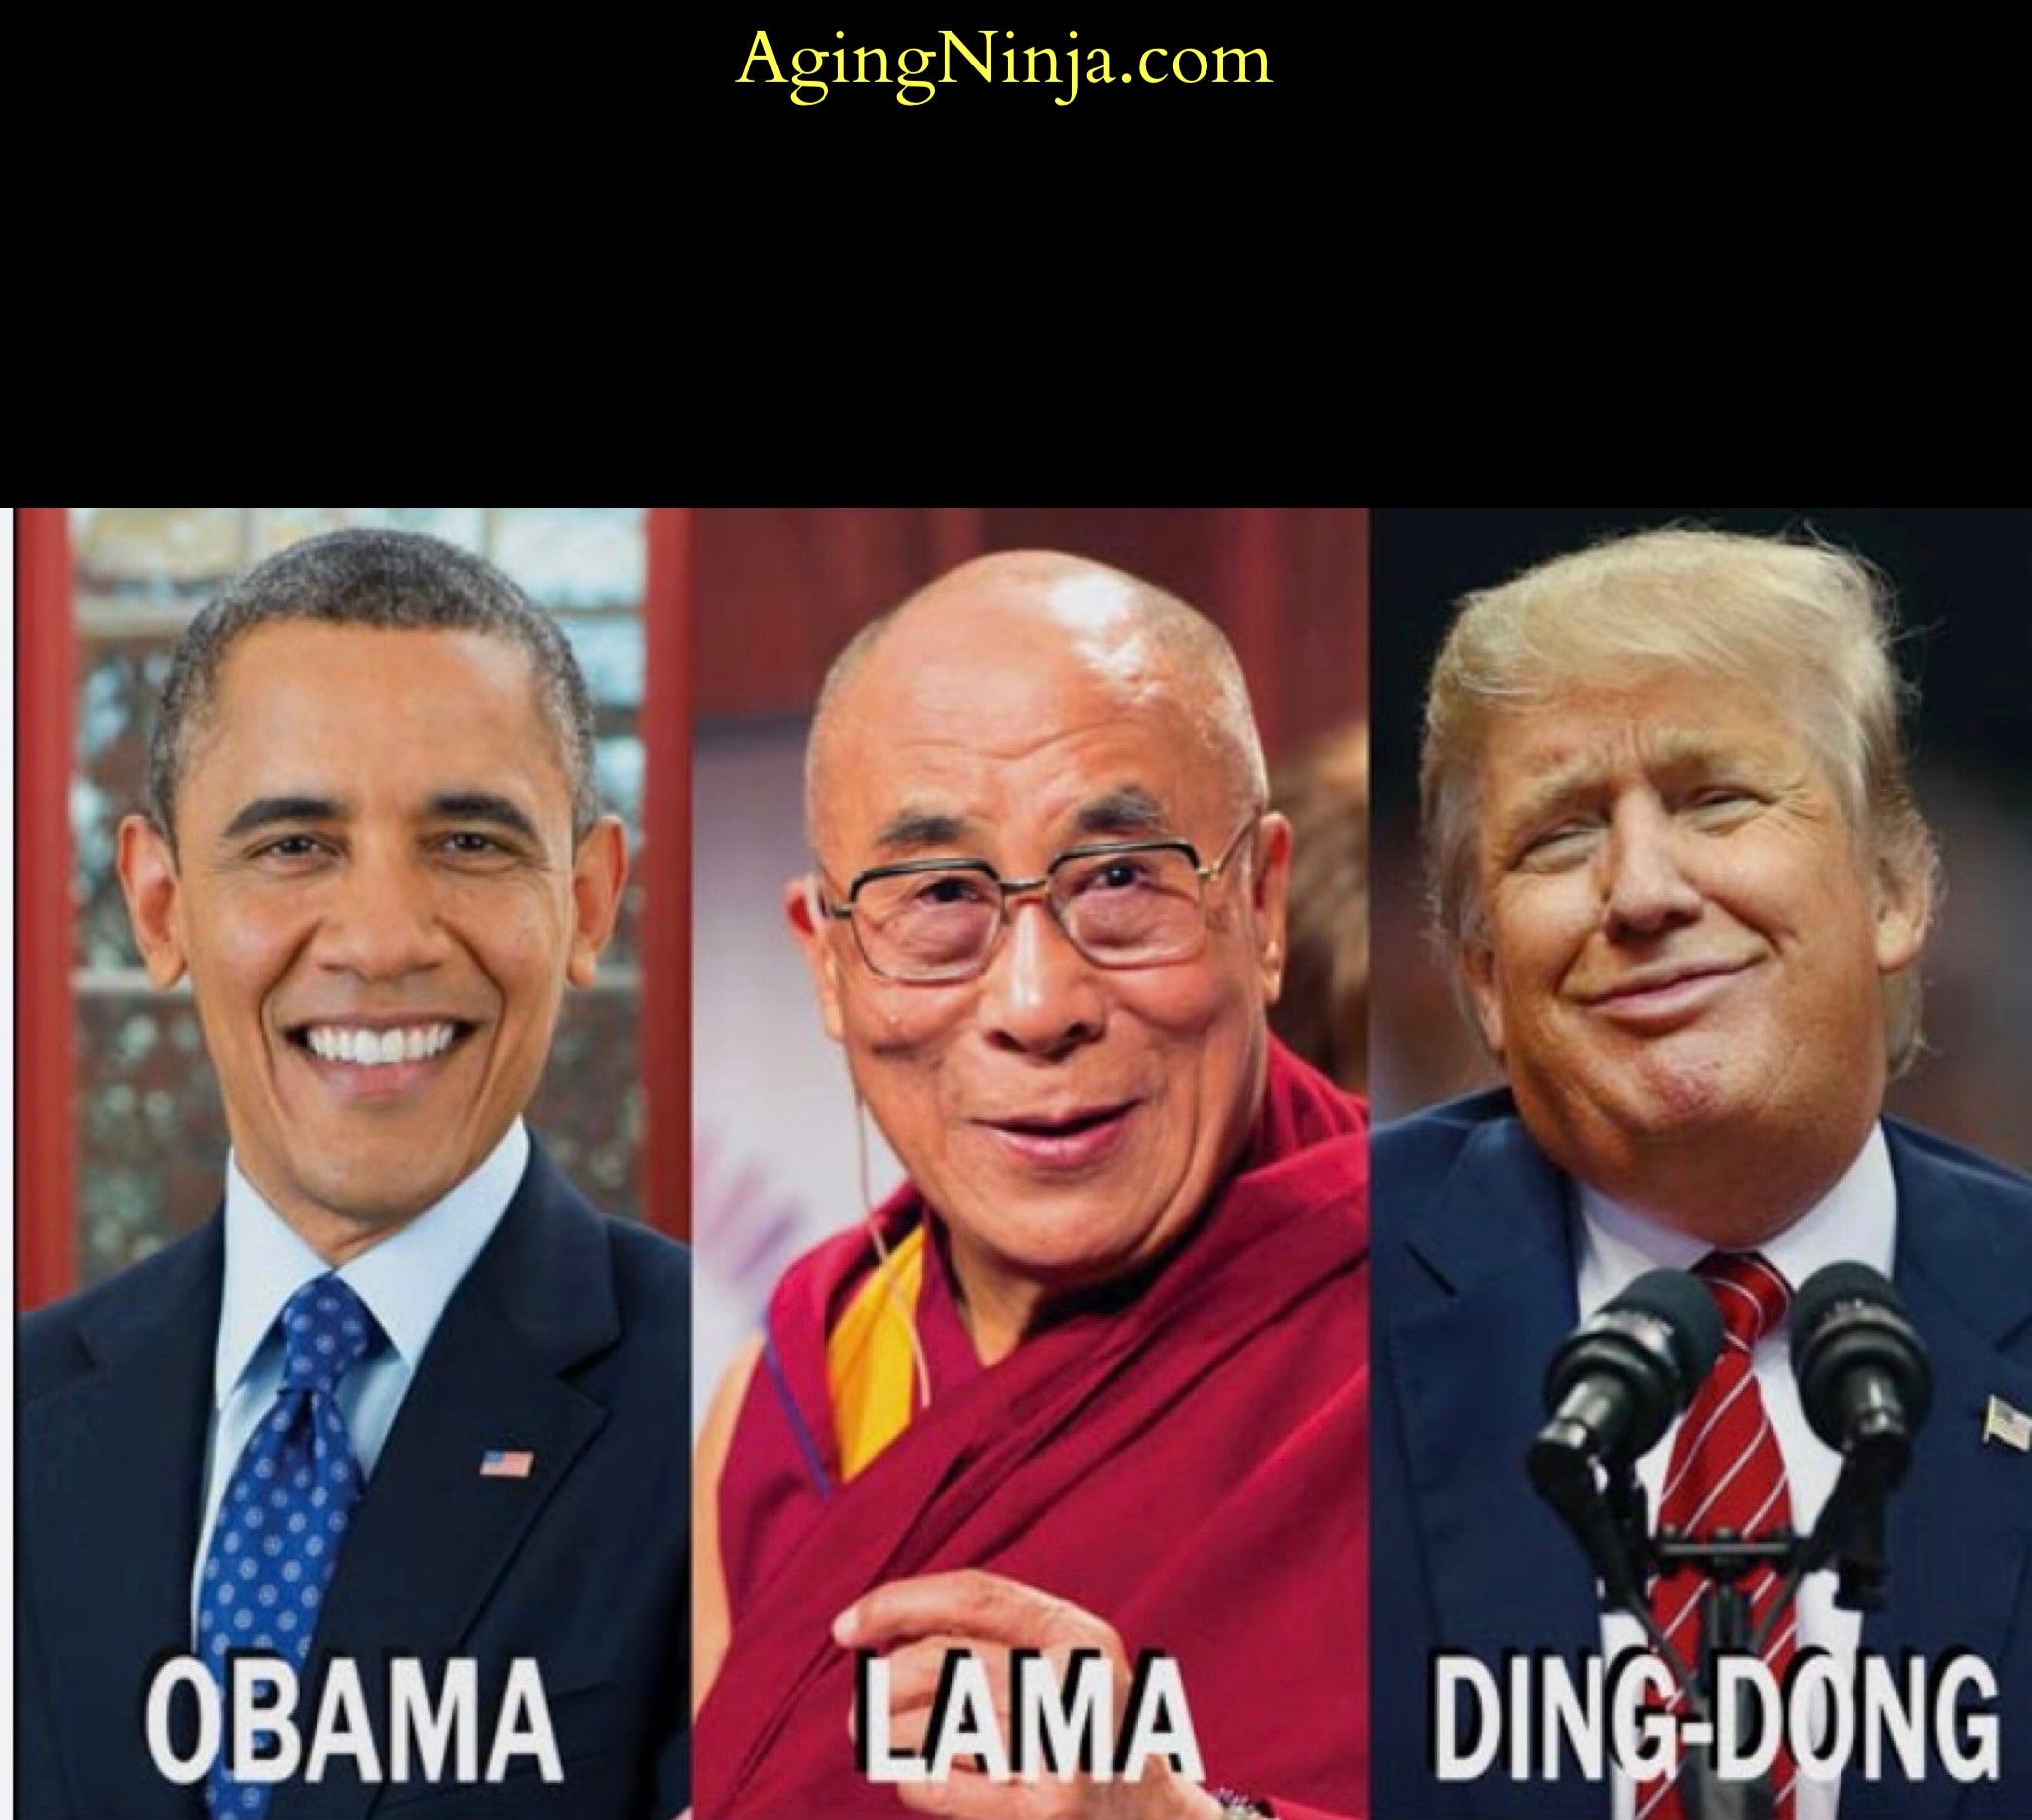 Obama Lama Ding-Dong